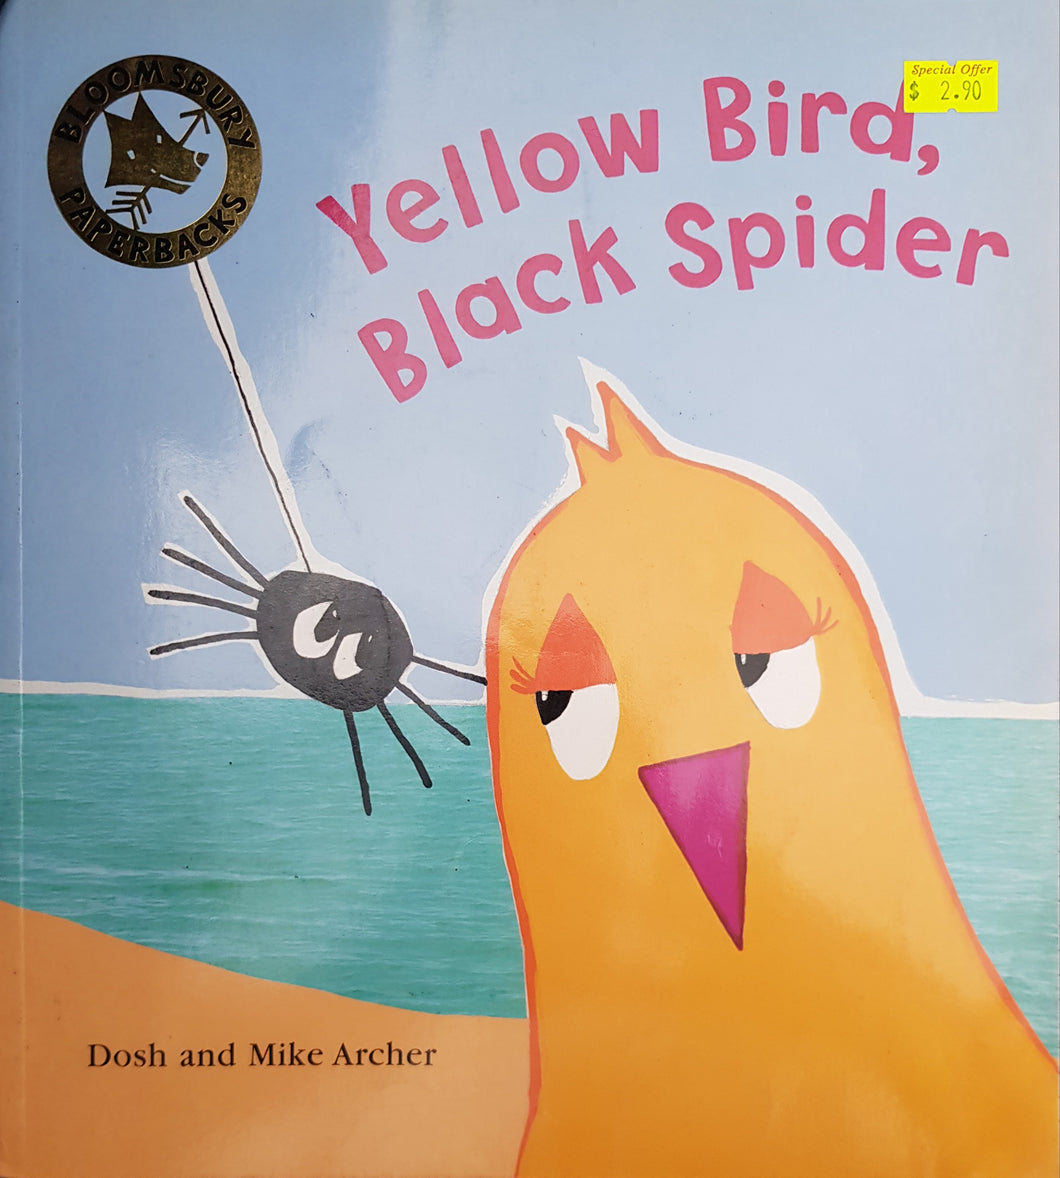 Yellow Bird, Black Spider -  Dosh Archer & Mike Archer